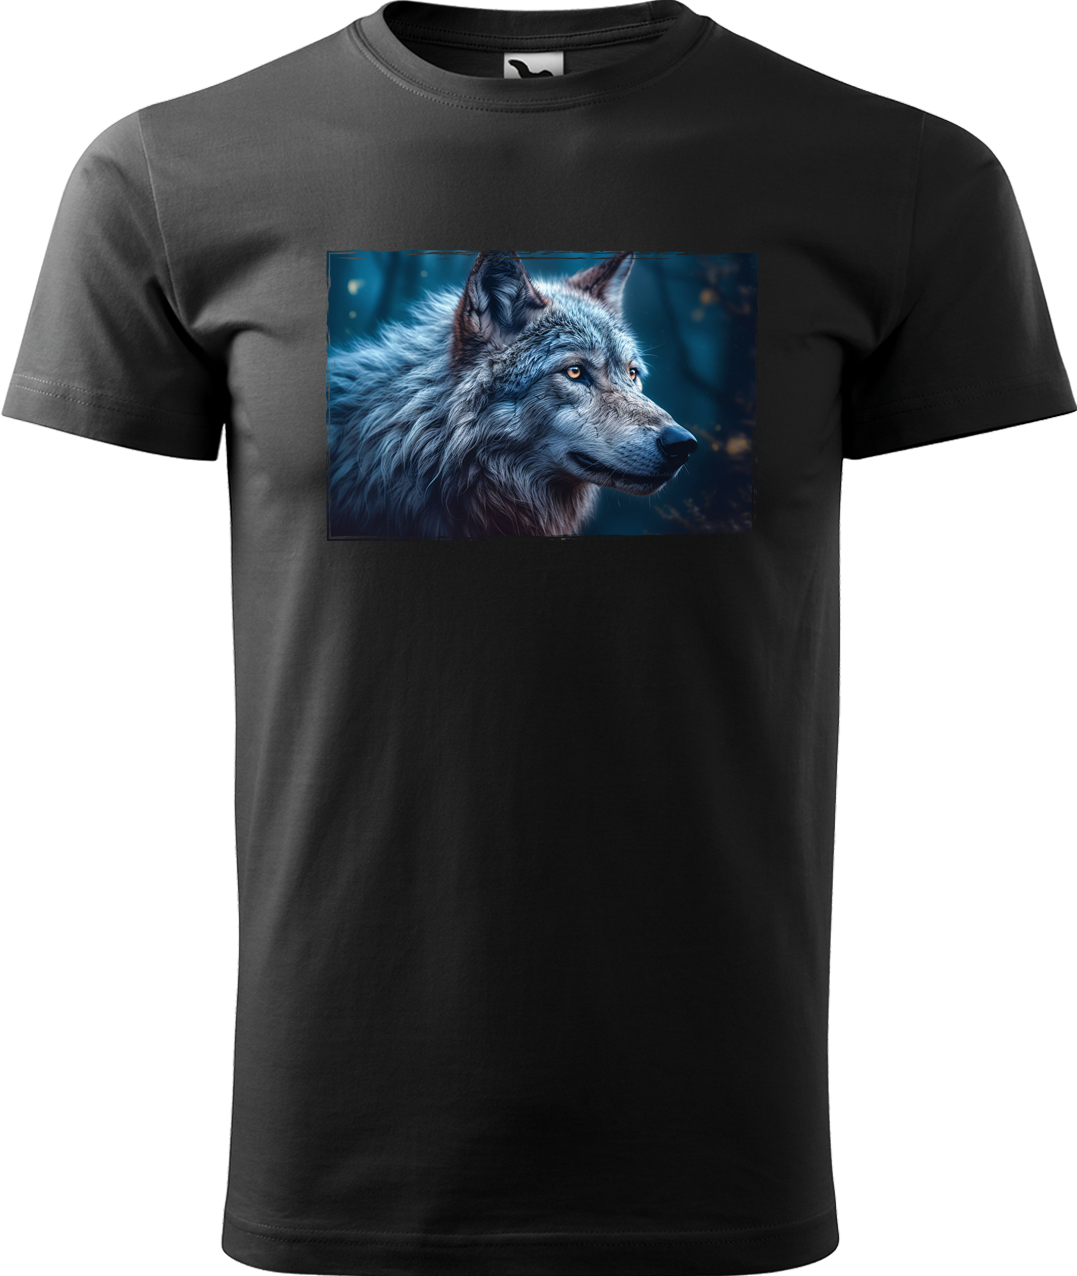 Pánské tričko s vlkem - Modrý vlk Velikost: L, Barva: Černá (01)